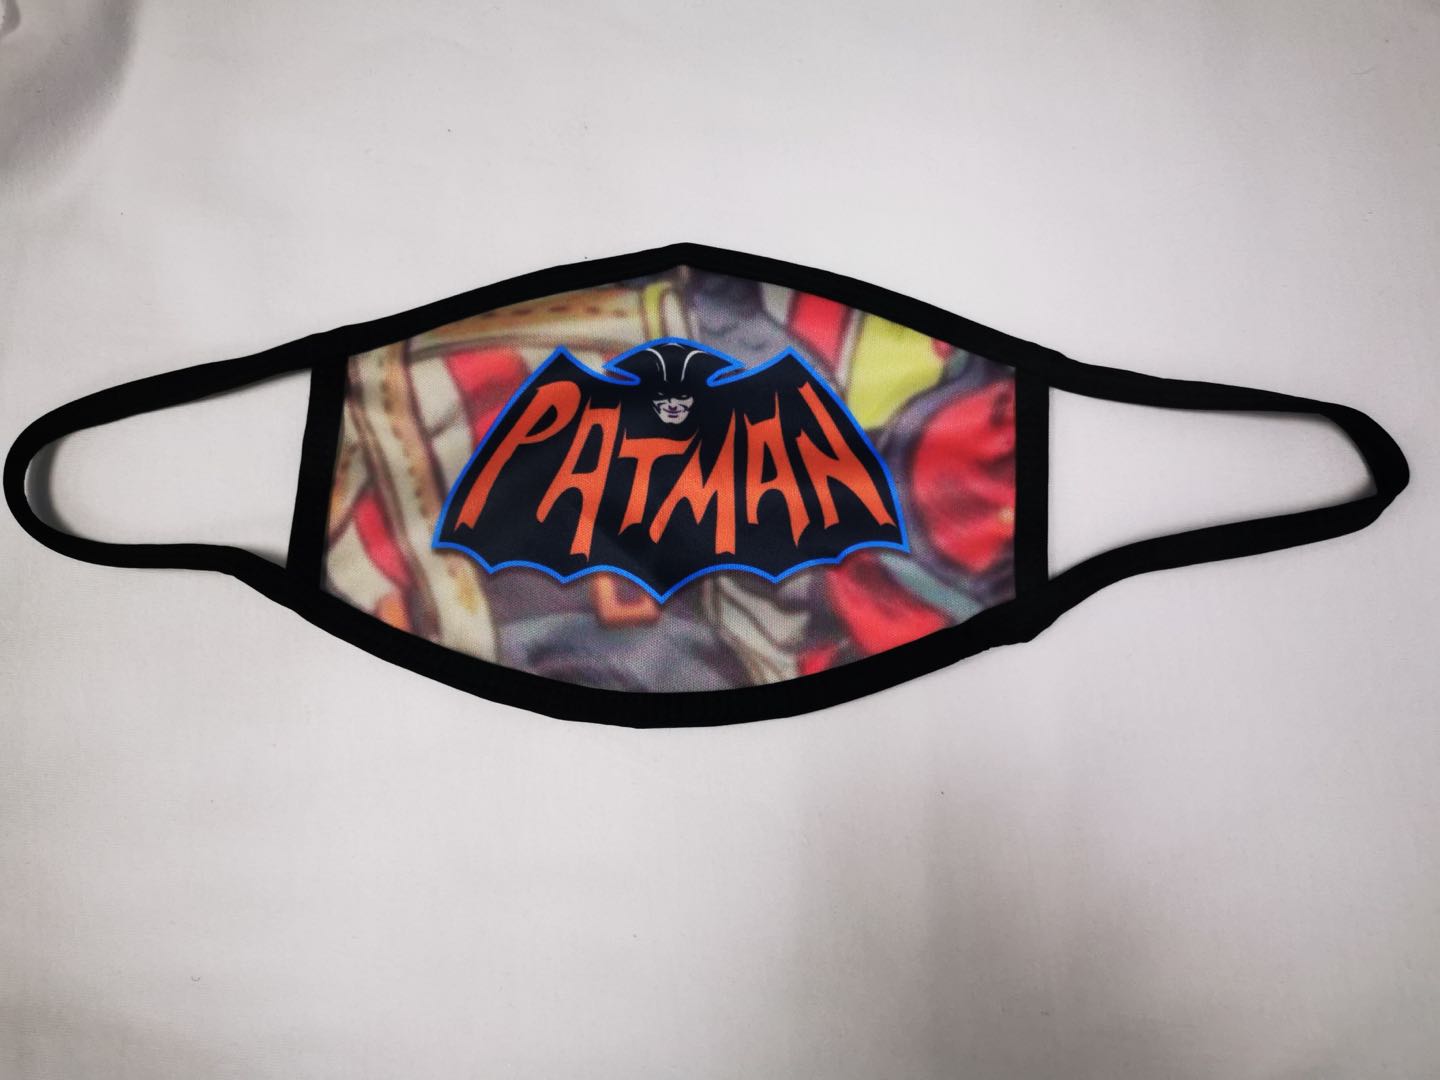 Patman Mask